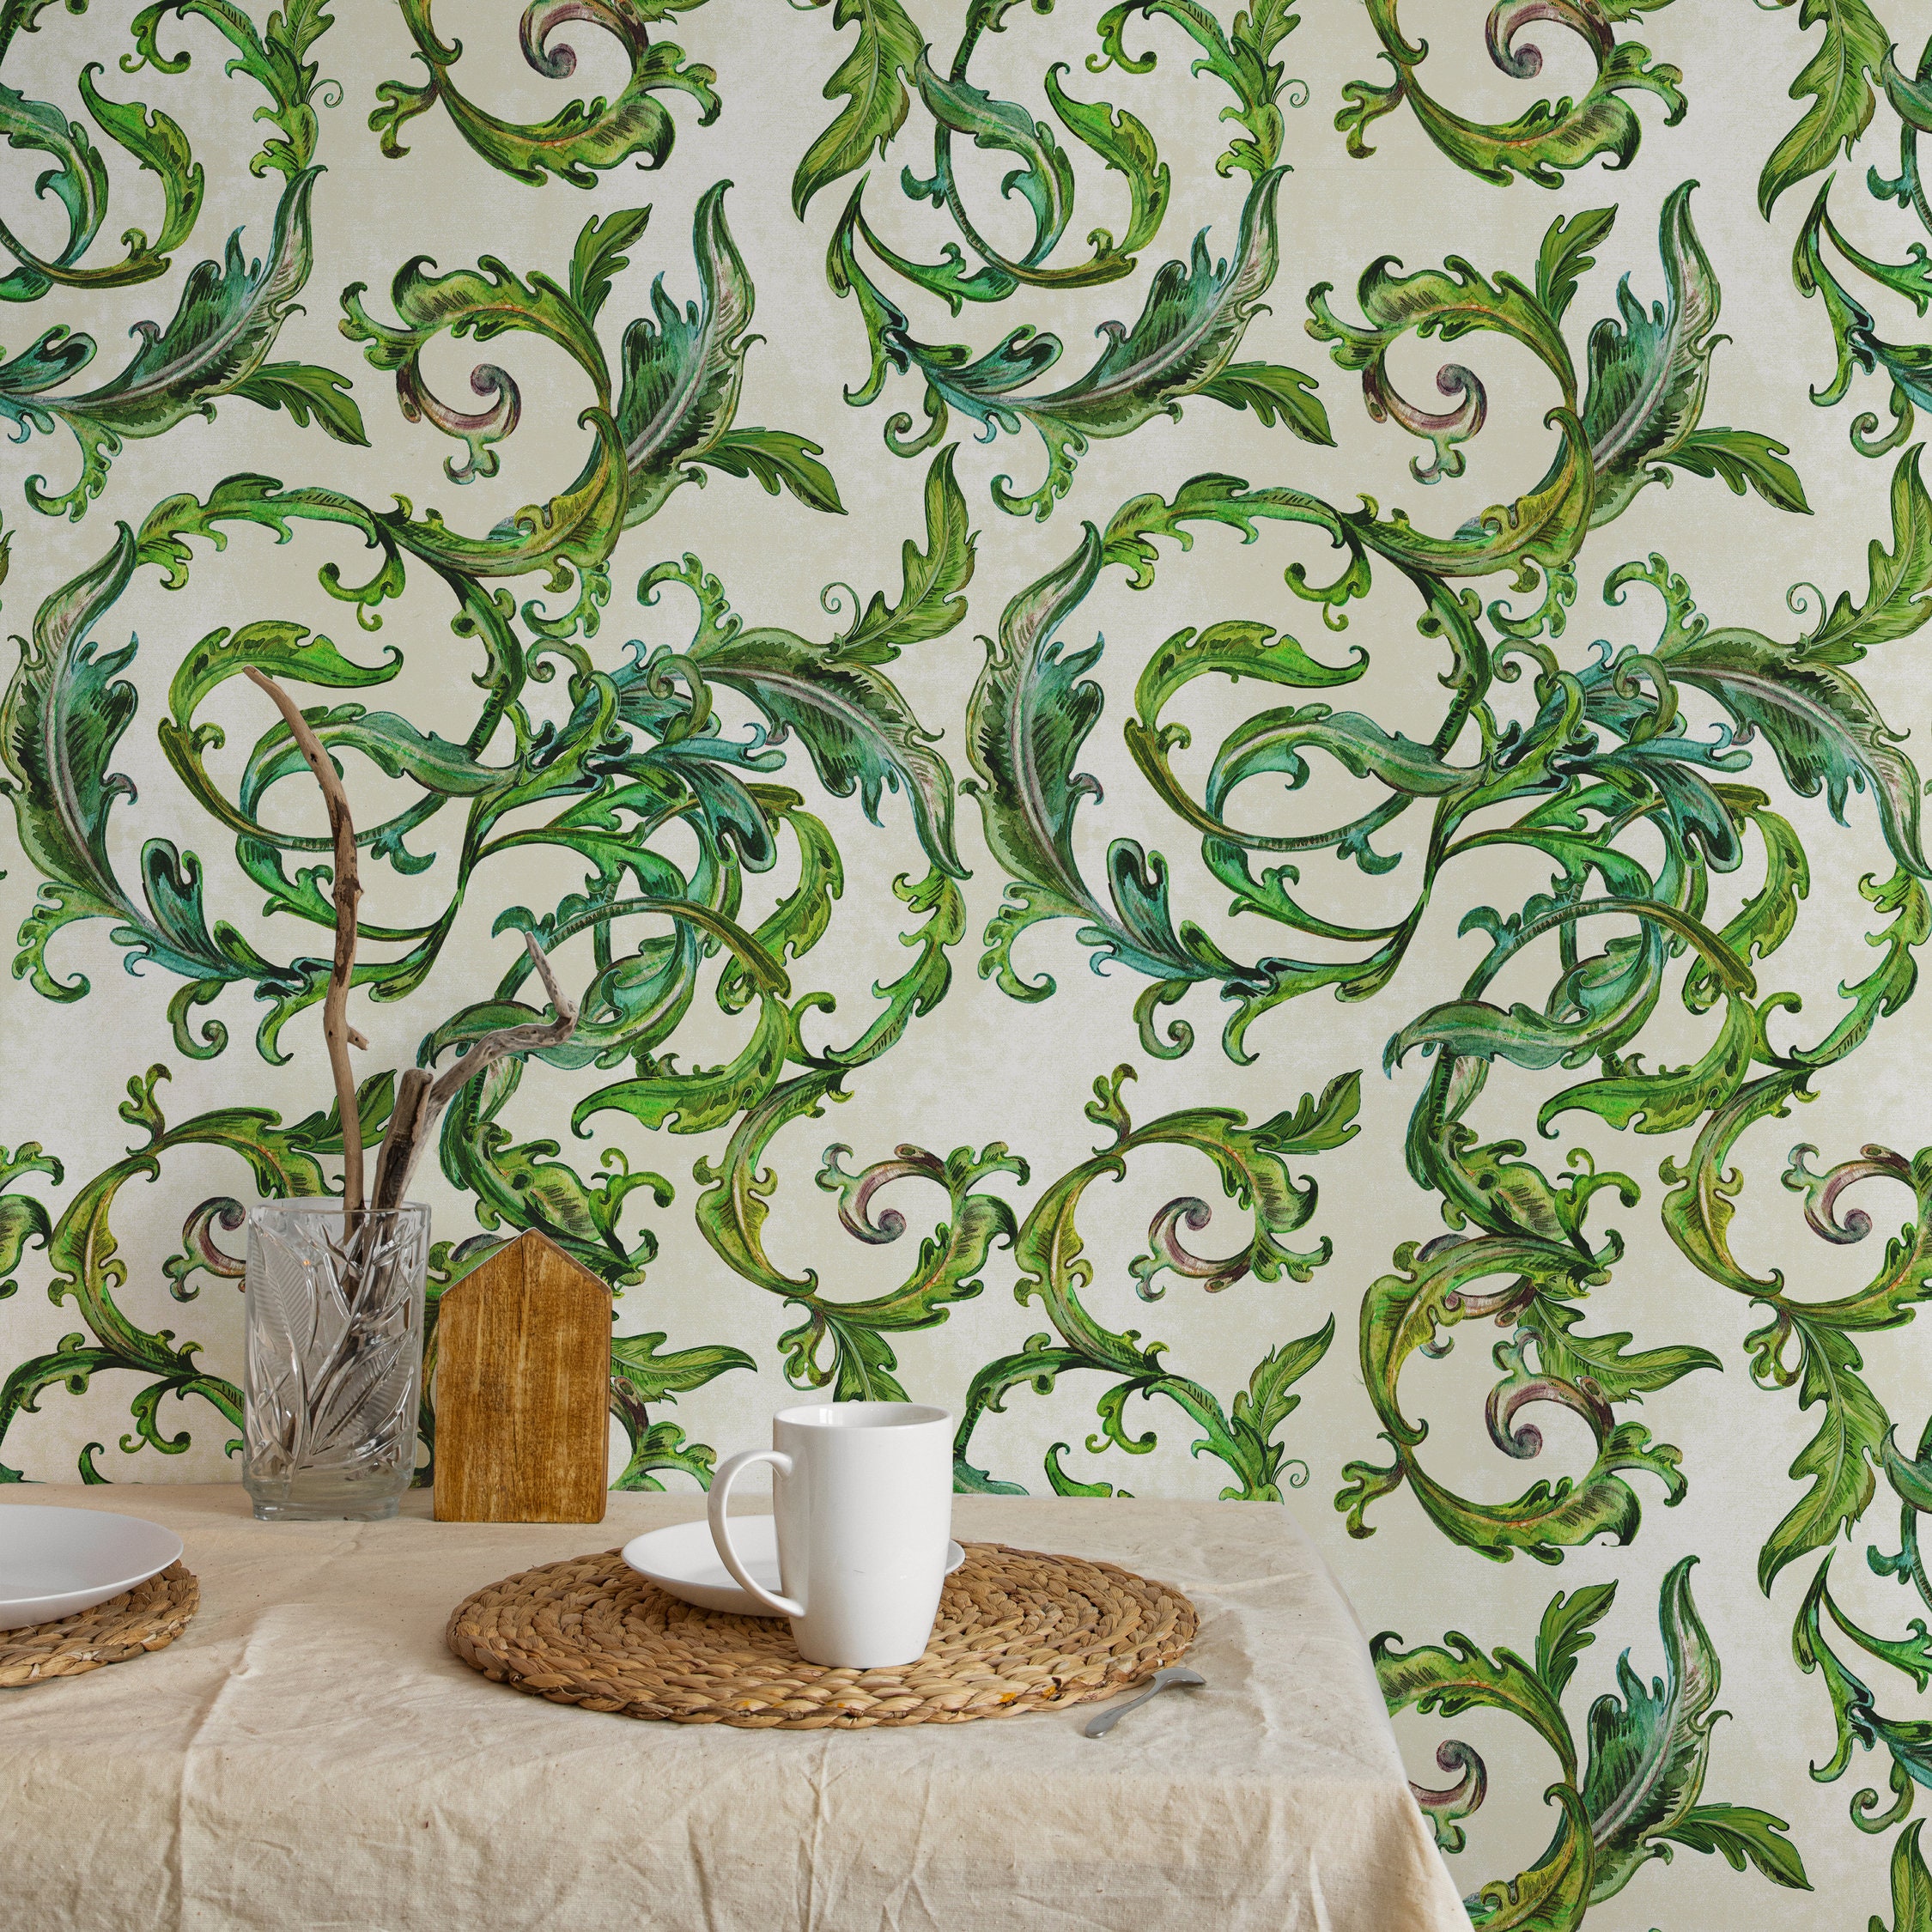 William Morris and wallpaper design  VA